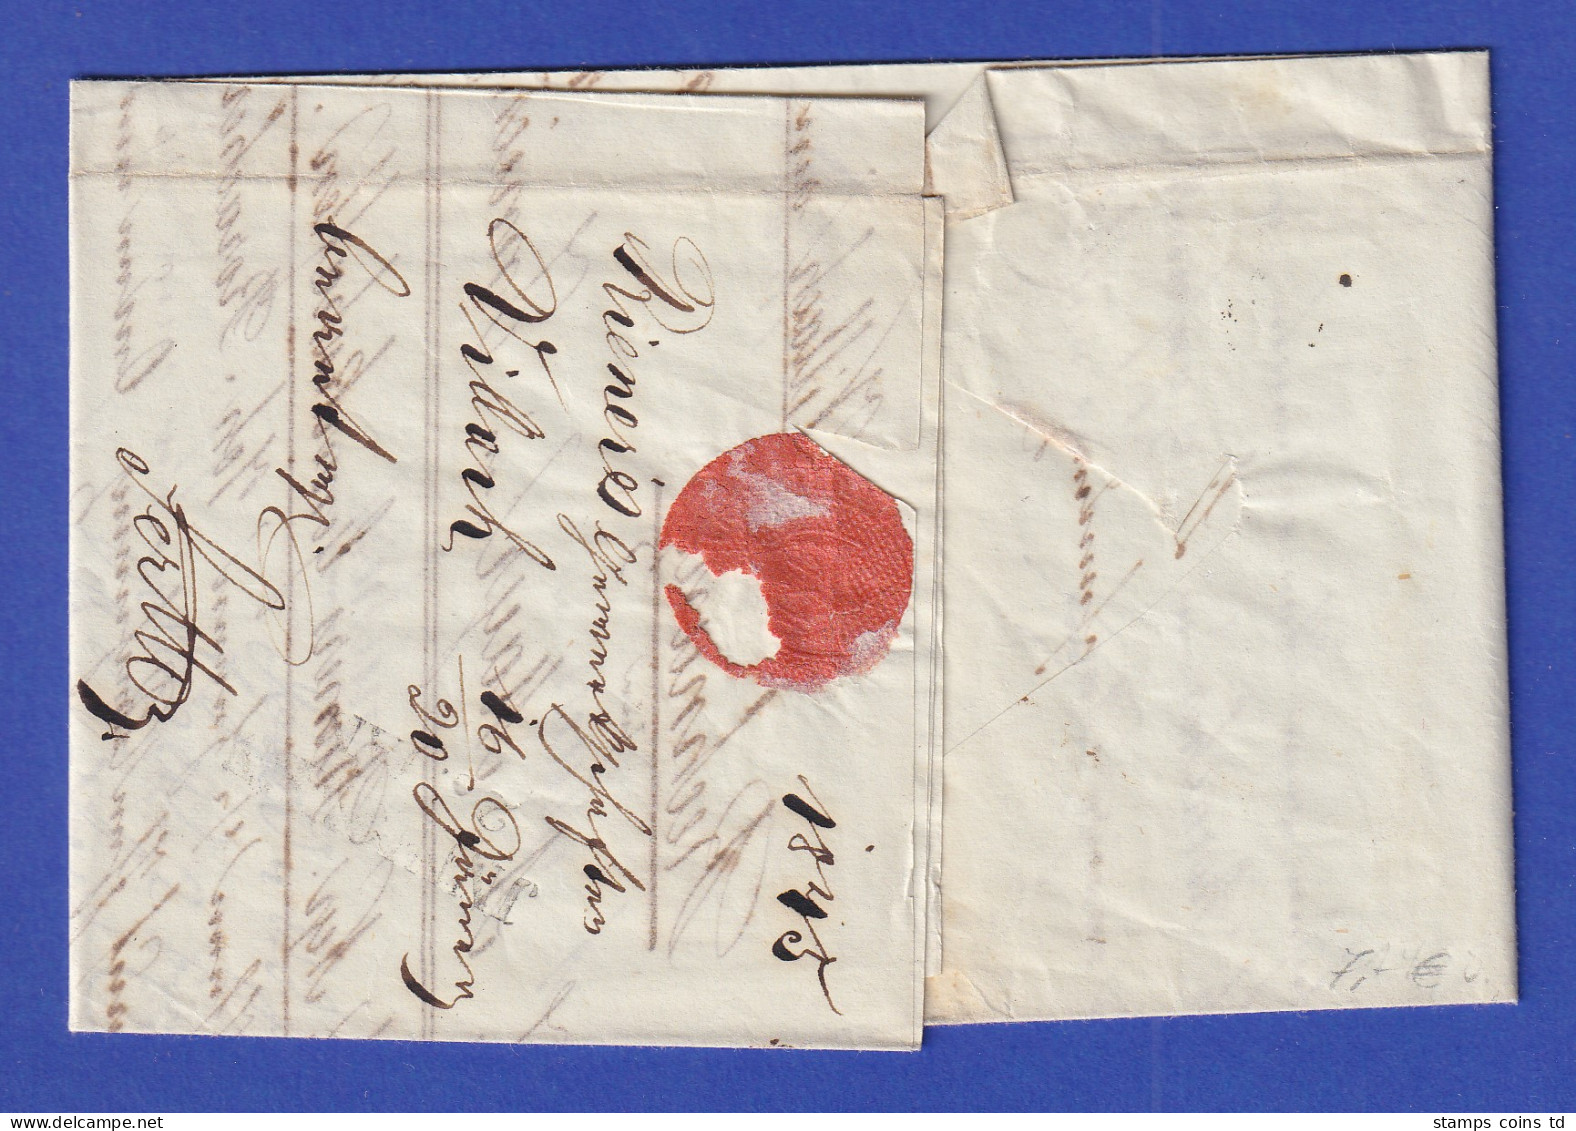 Österreich Geschäftsbrief Mit Zweizeiler VILLACH Von 1845 - ...-1850 Voorfilatelie